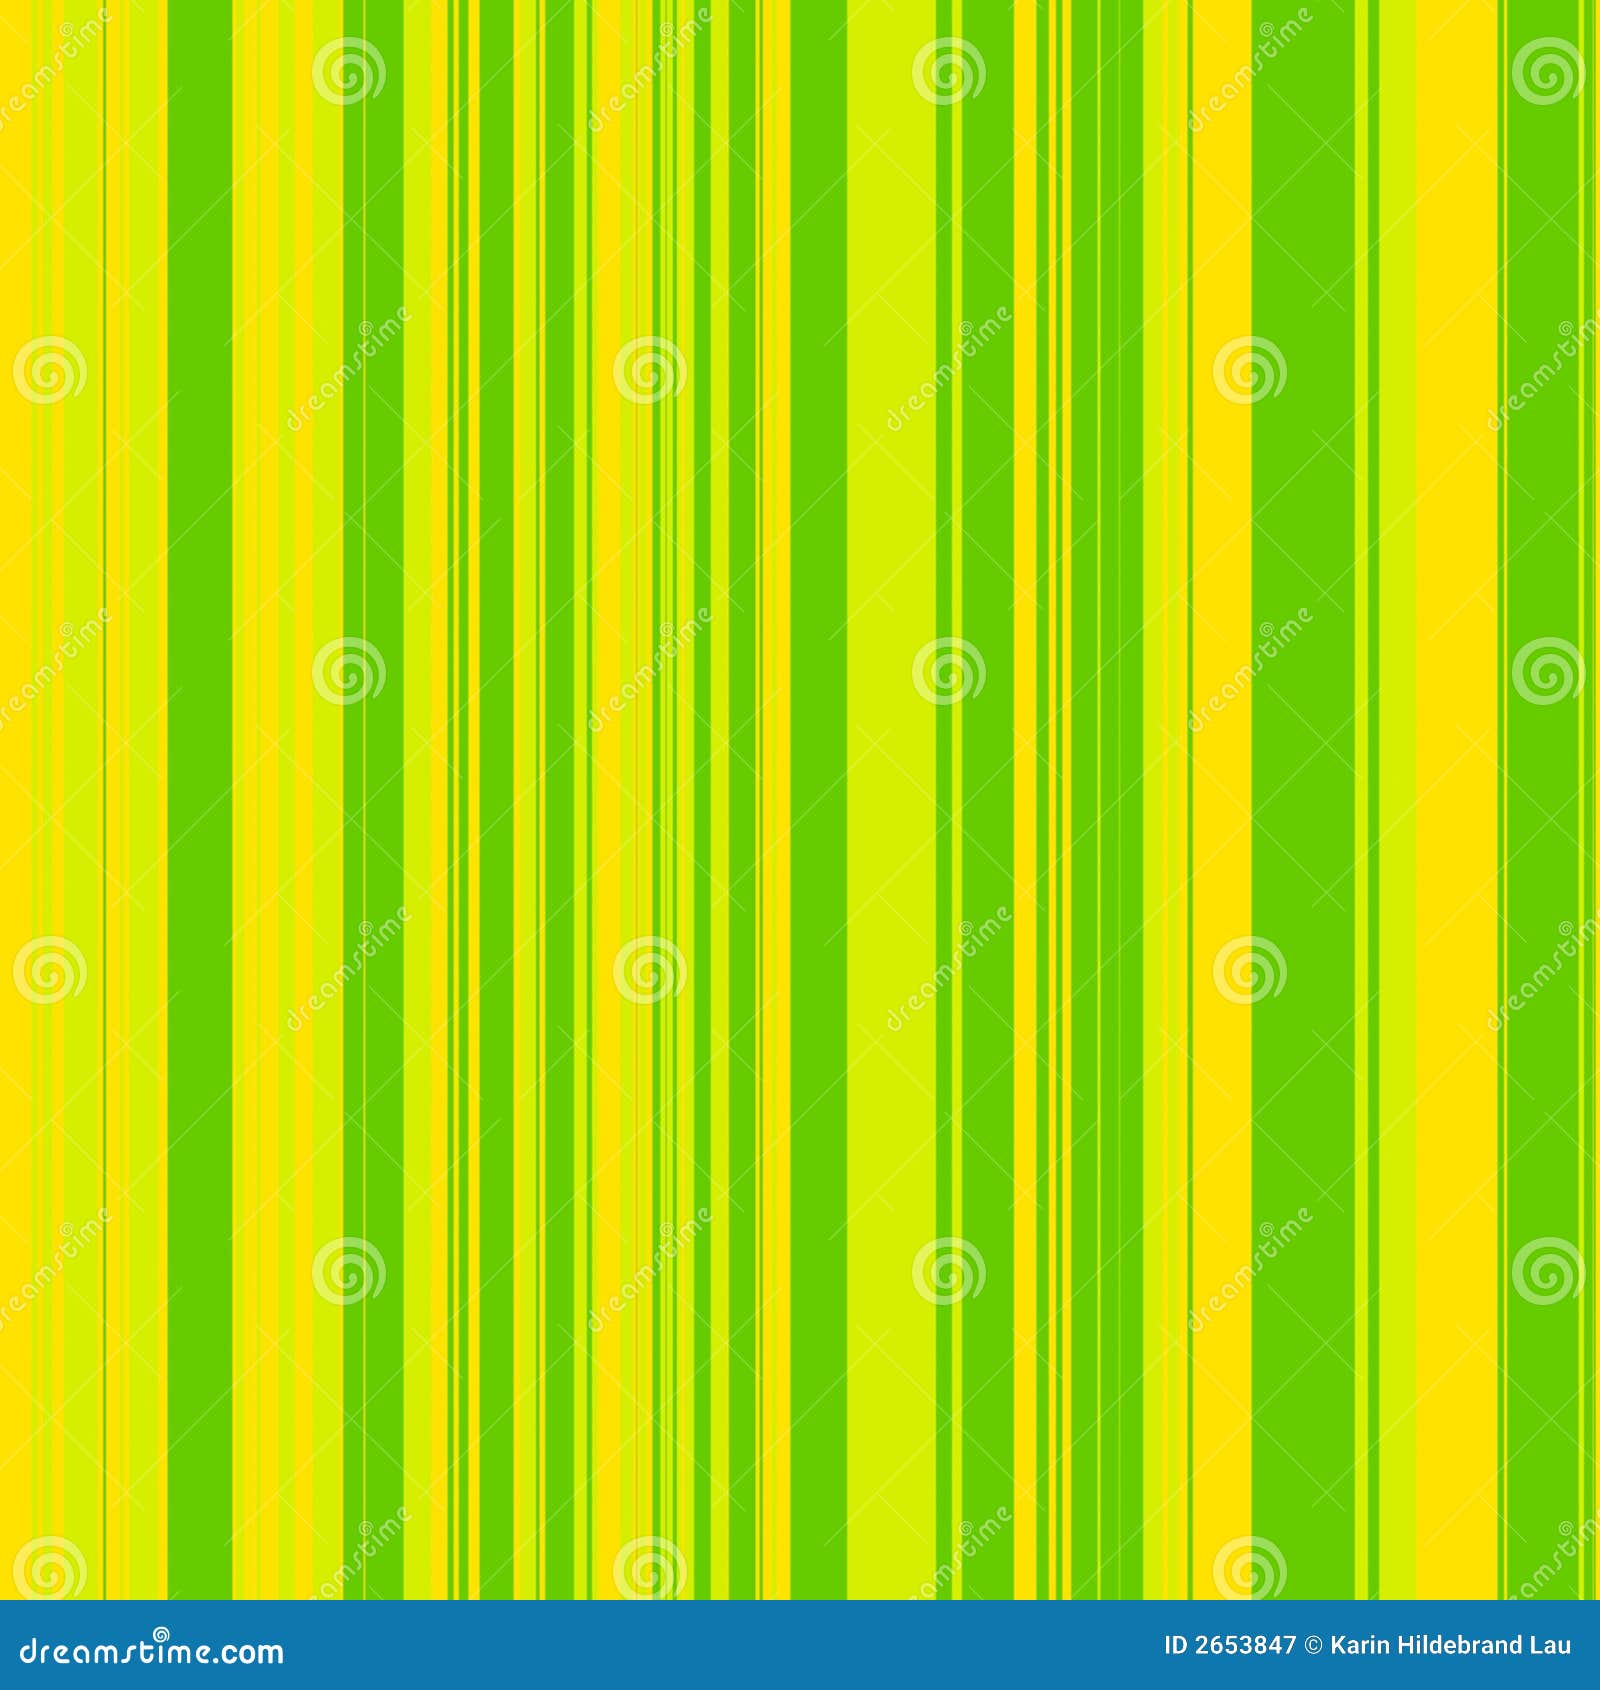 Chọn ngay Green Yellow Stripes làm hình nền điện thoại của mình với sự pha trộn của màu xanh lá cây và màu vàng nổi bật. Hãy xem hình ảnh liên quan đến chủ đề này, bạn sẽ không thể không yêu thích điều đó.